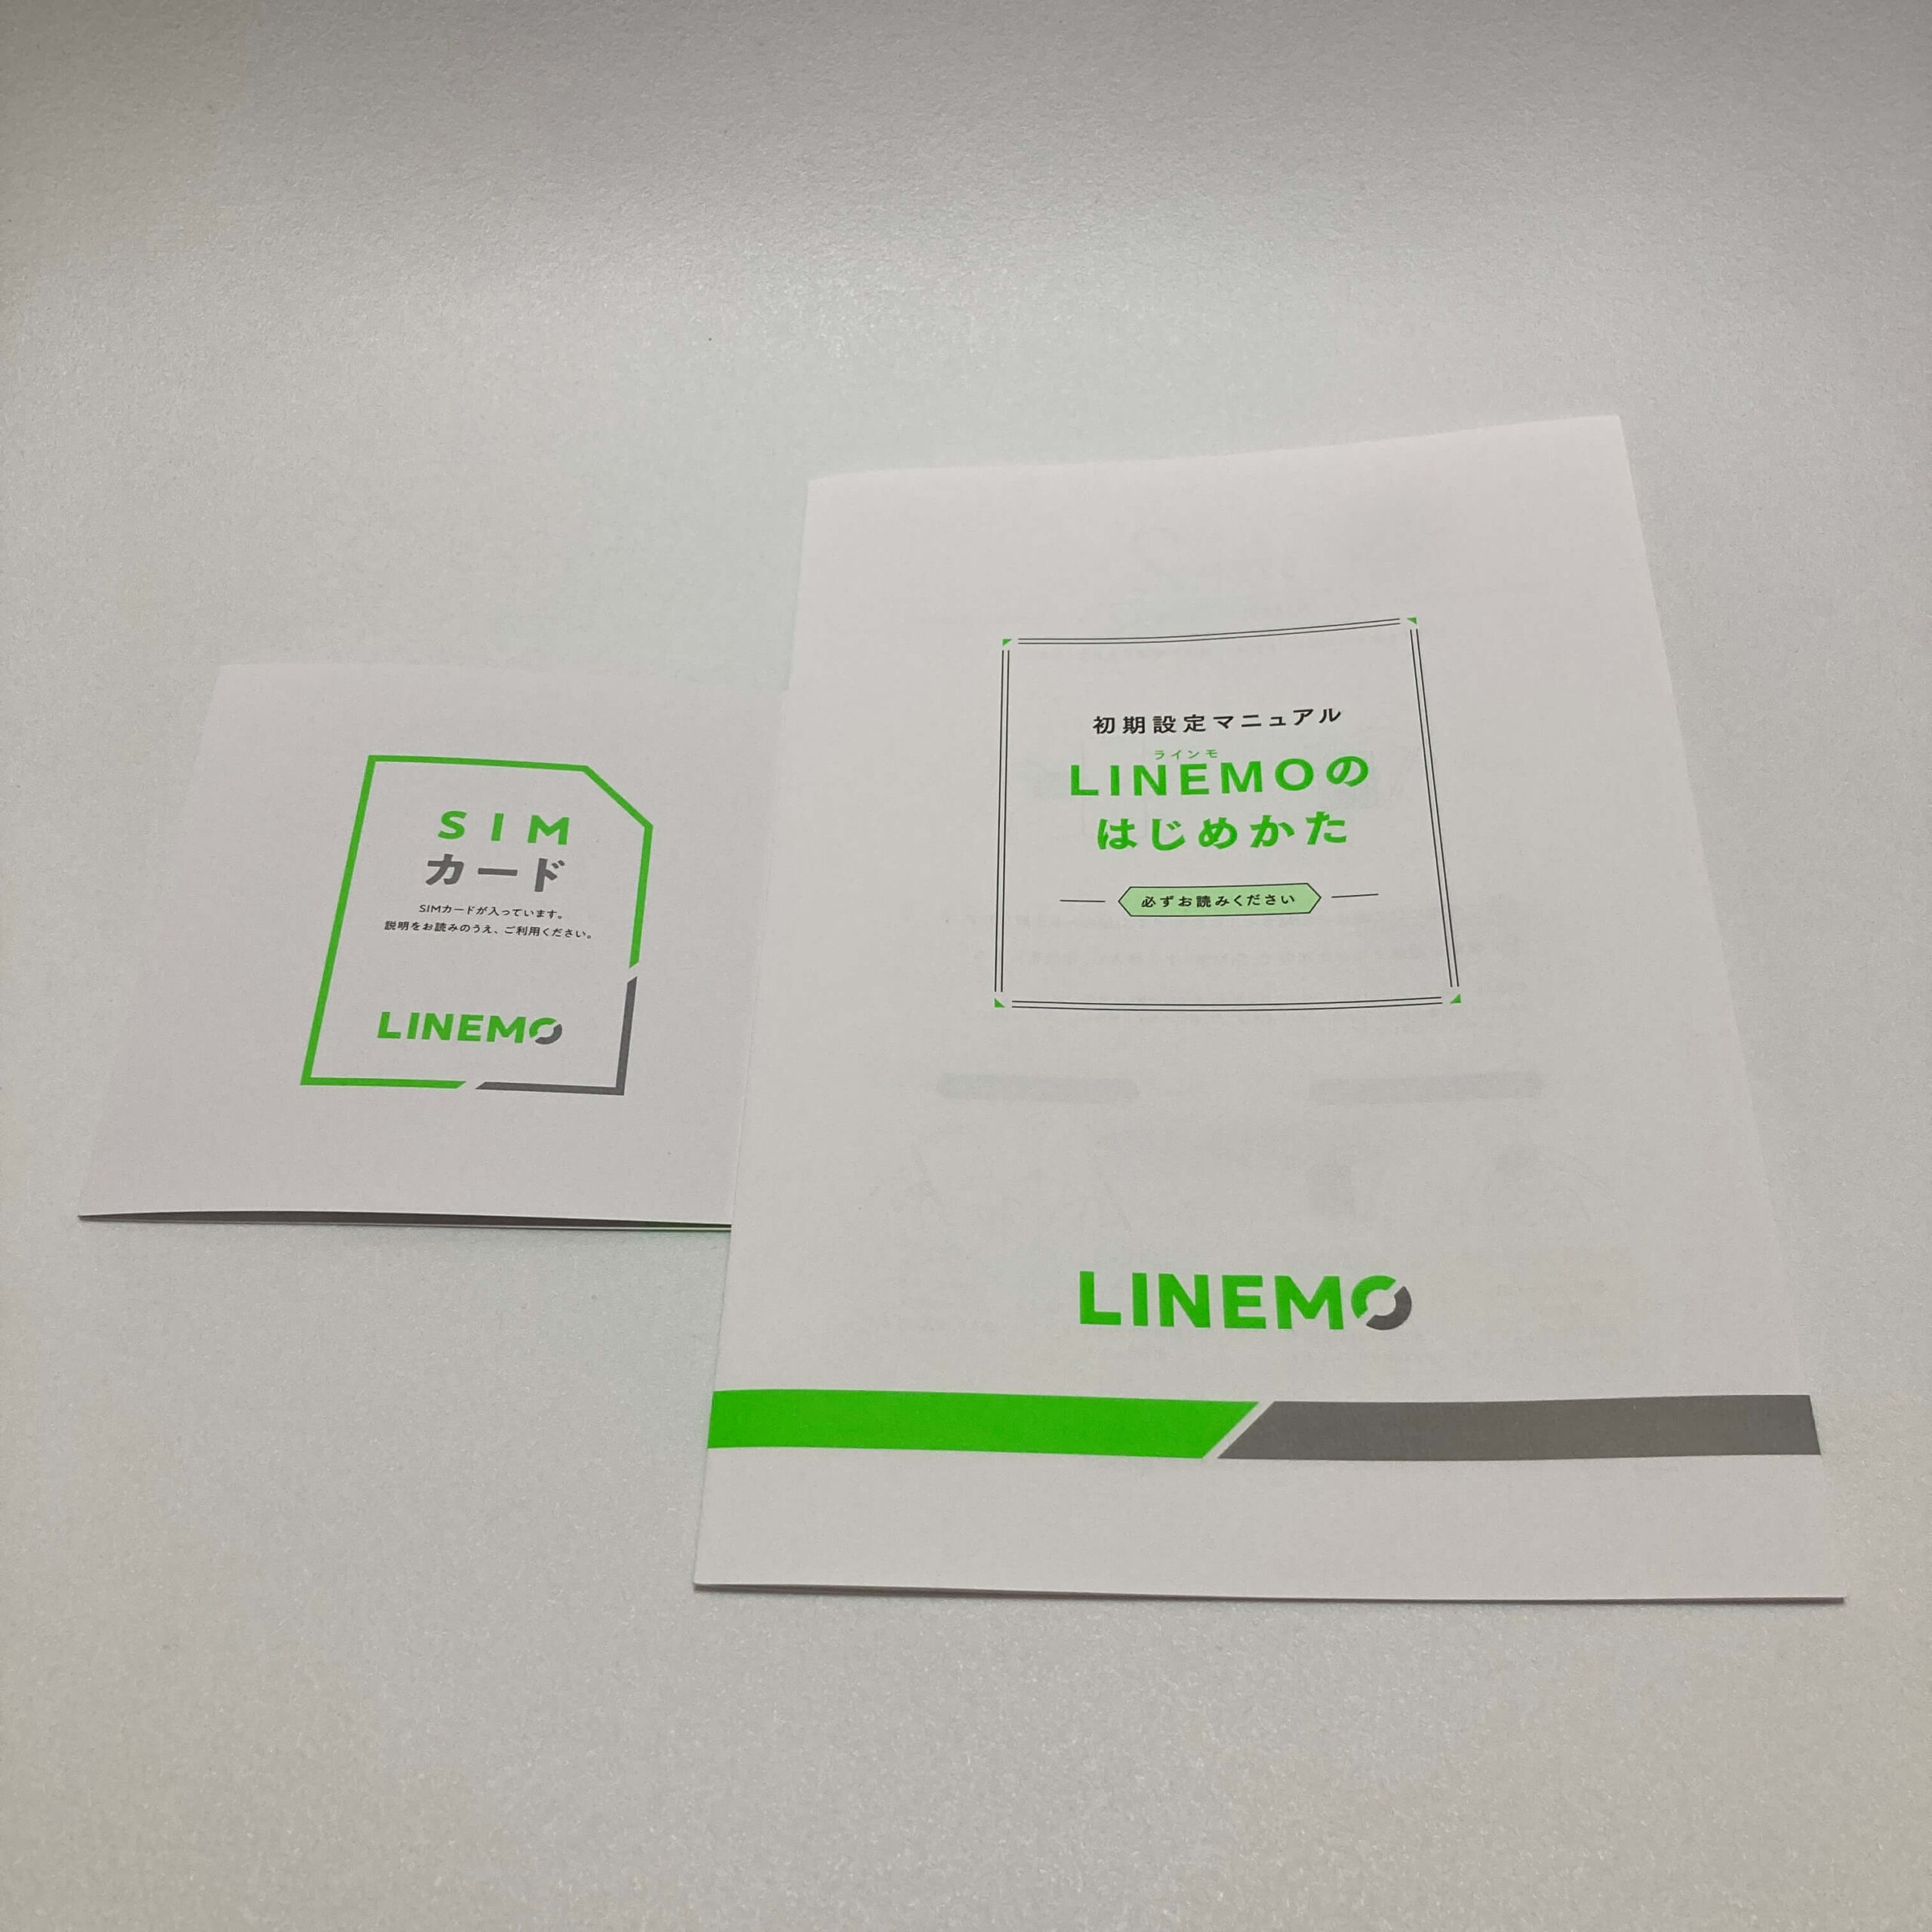 LINEMOのSIMカードと初期設定マニュアル